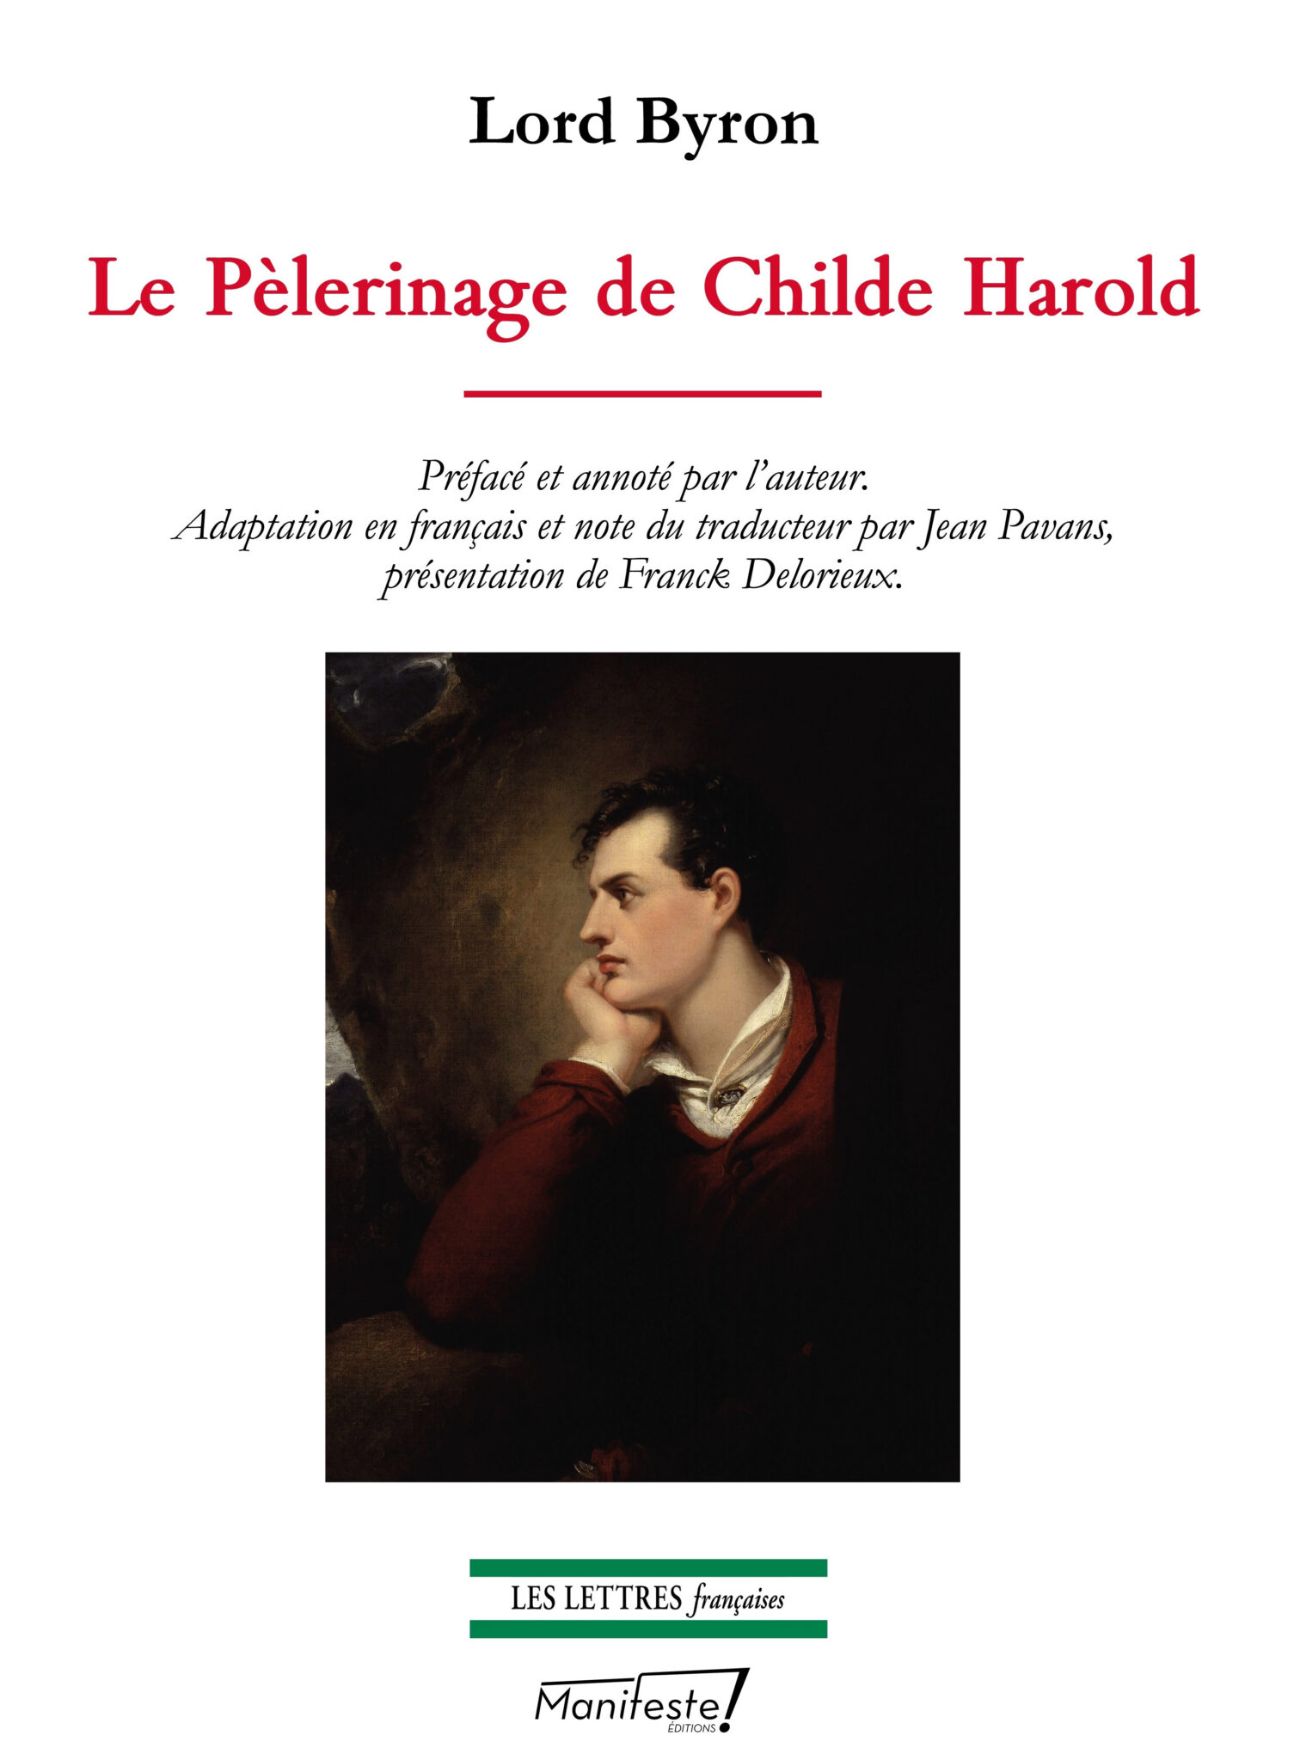 Lord Byron, Le Pélerinage de Childe Harold (éd. bilingue)